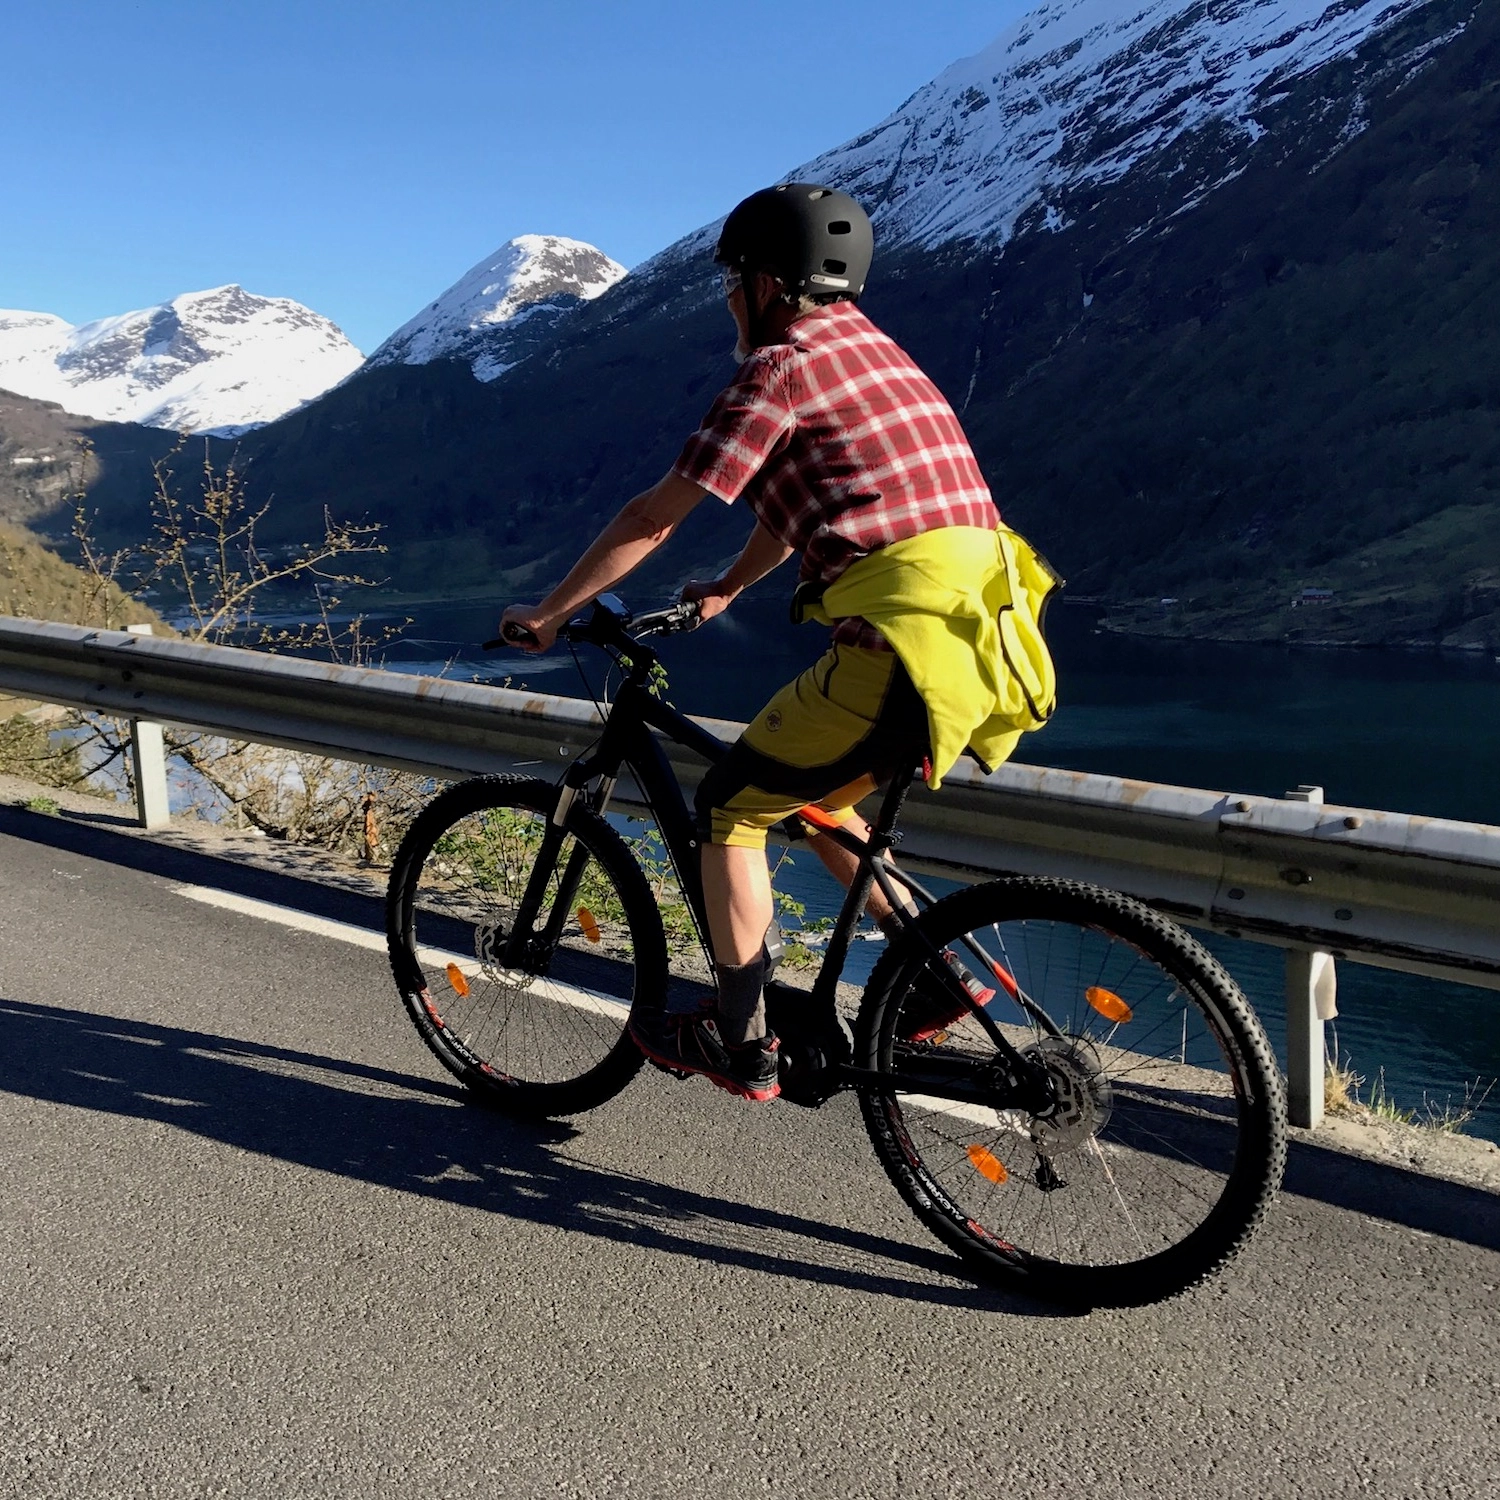 Ting å gjøre i Geiranger - El-sykkel leie i Geiranger,  På vei opp til utsiktpunkt over Geirangerfjord